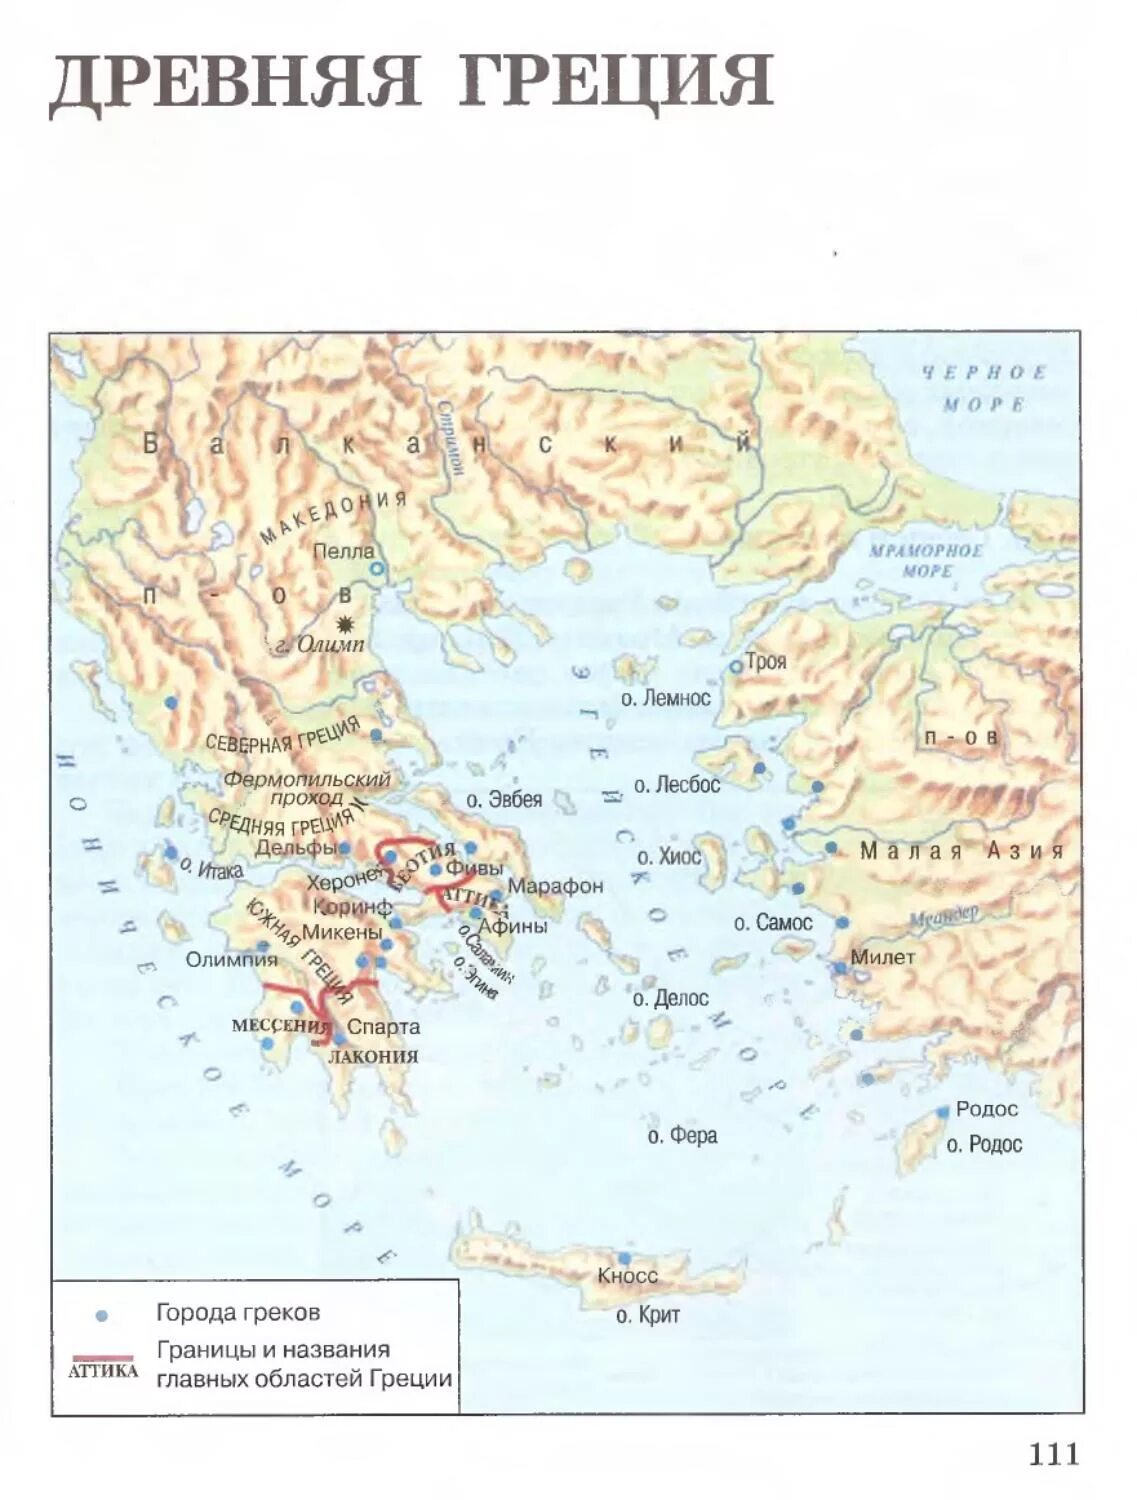 Показать на карте древнюю грецию. Карта древней Греции 5 класс история. Карта древней Греции 5 класс история древнего. Карта древнейшая Греция 5 класс история. Древнейшая Греция карта 5 класс.